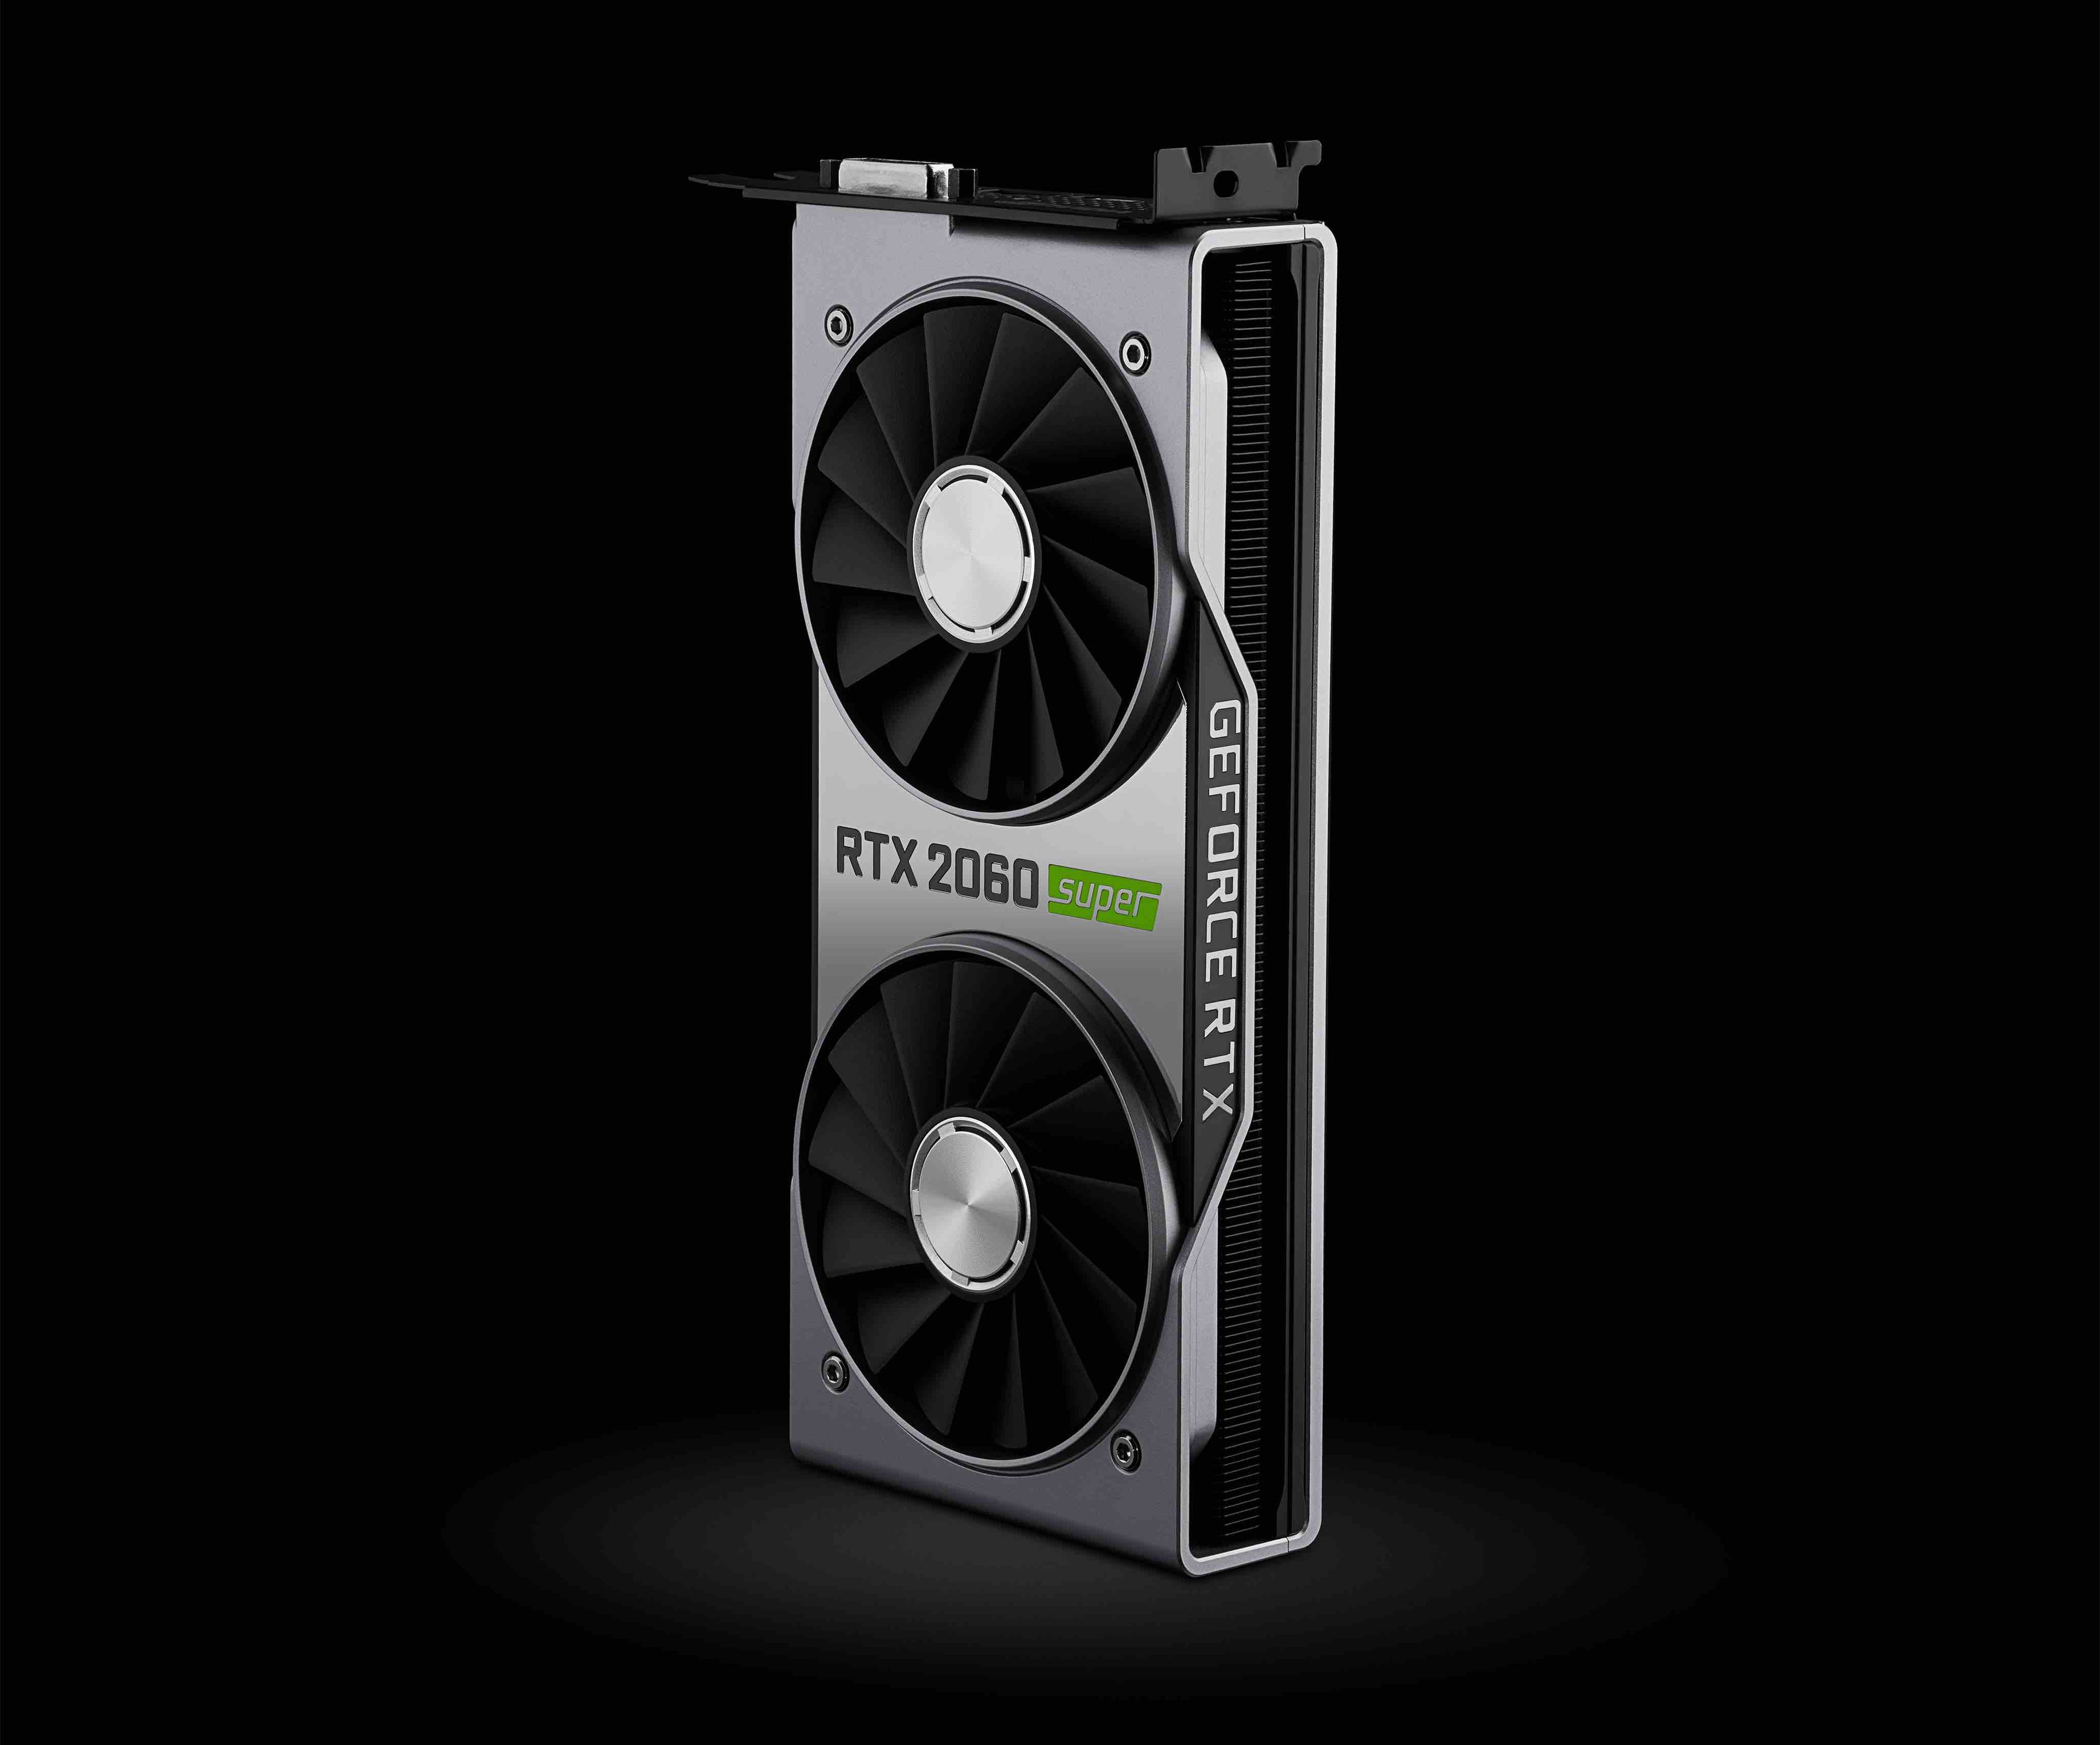 GeForce RTX 2060 SUPER